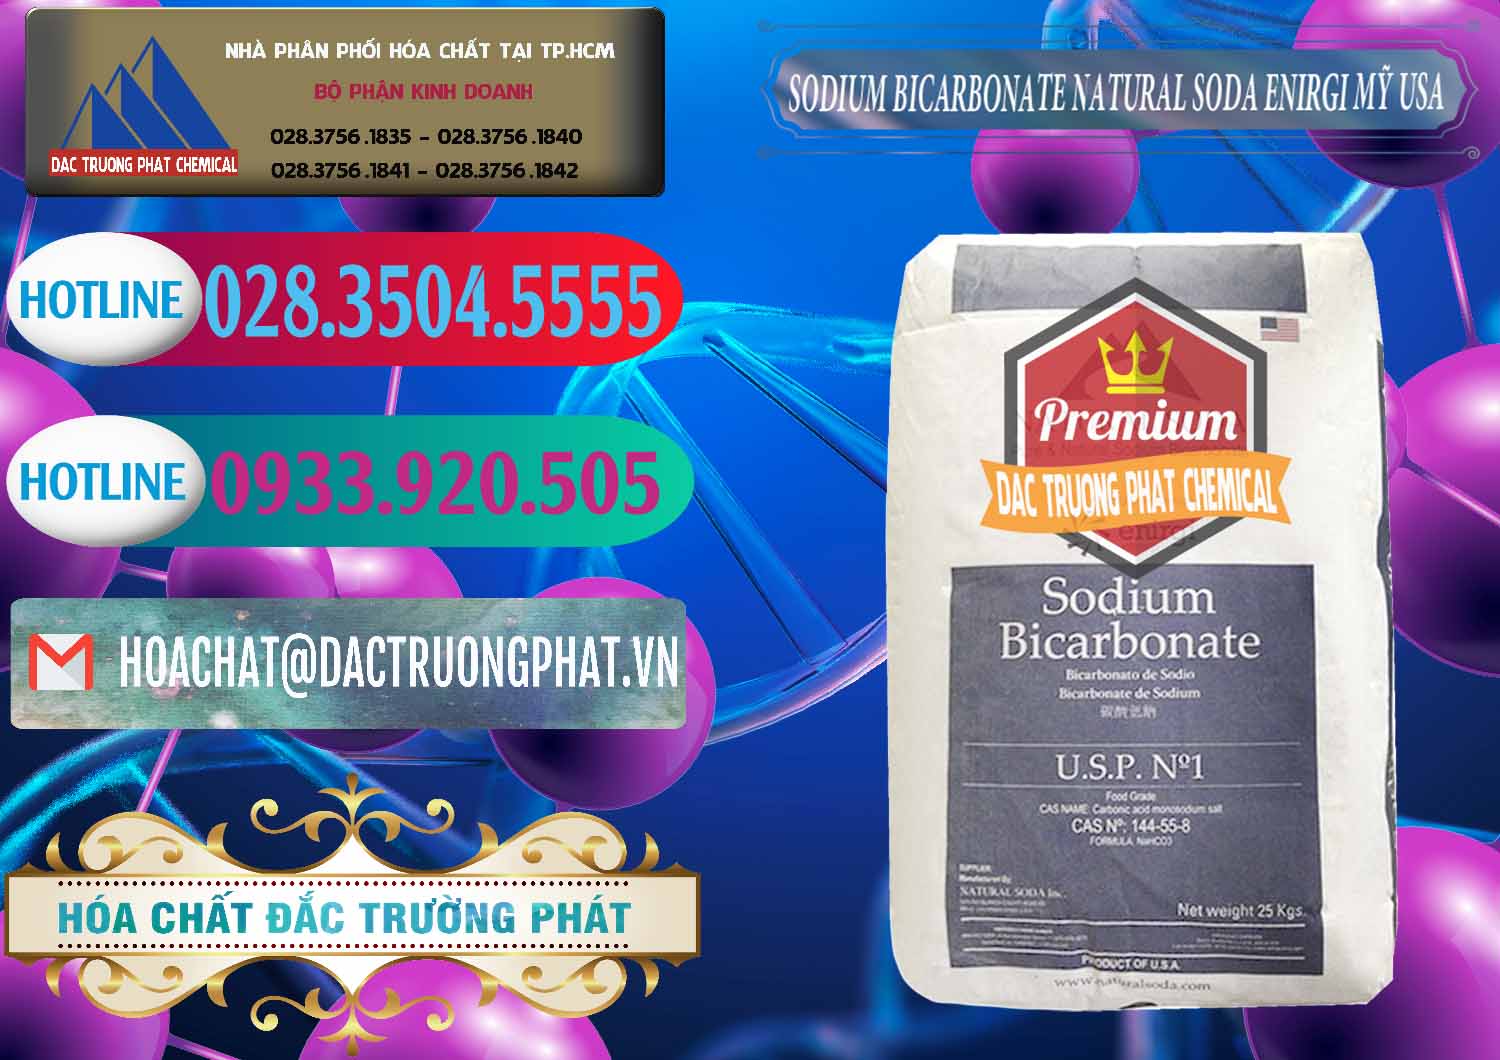 Đơn vị chuyên cung cấp & bán Sodium Bicarbonate – Bicar NaHCO3 Food Grade Natural Soda Enirgi Mỹ USA - 0257 - Nơi bán và cung cấp hóa chất tại TP.HCM - truongphat.vn